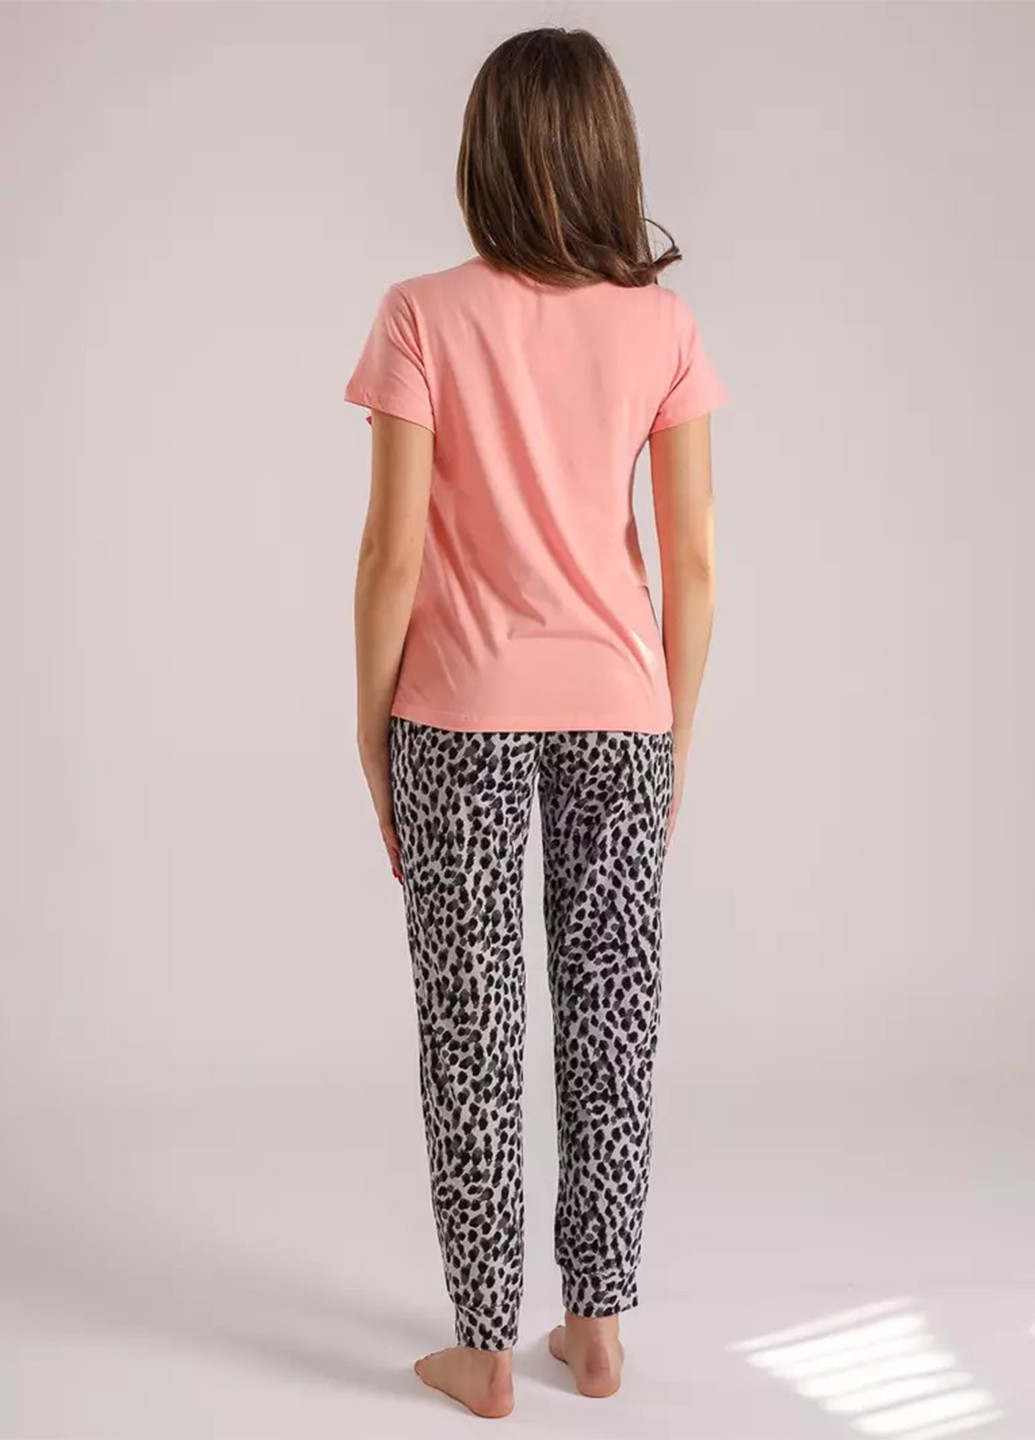 Комбинированная всесезон пижама (футболка, брюки) футболка + брюки BBL